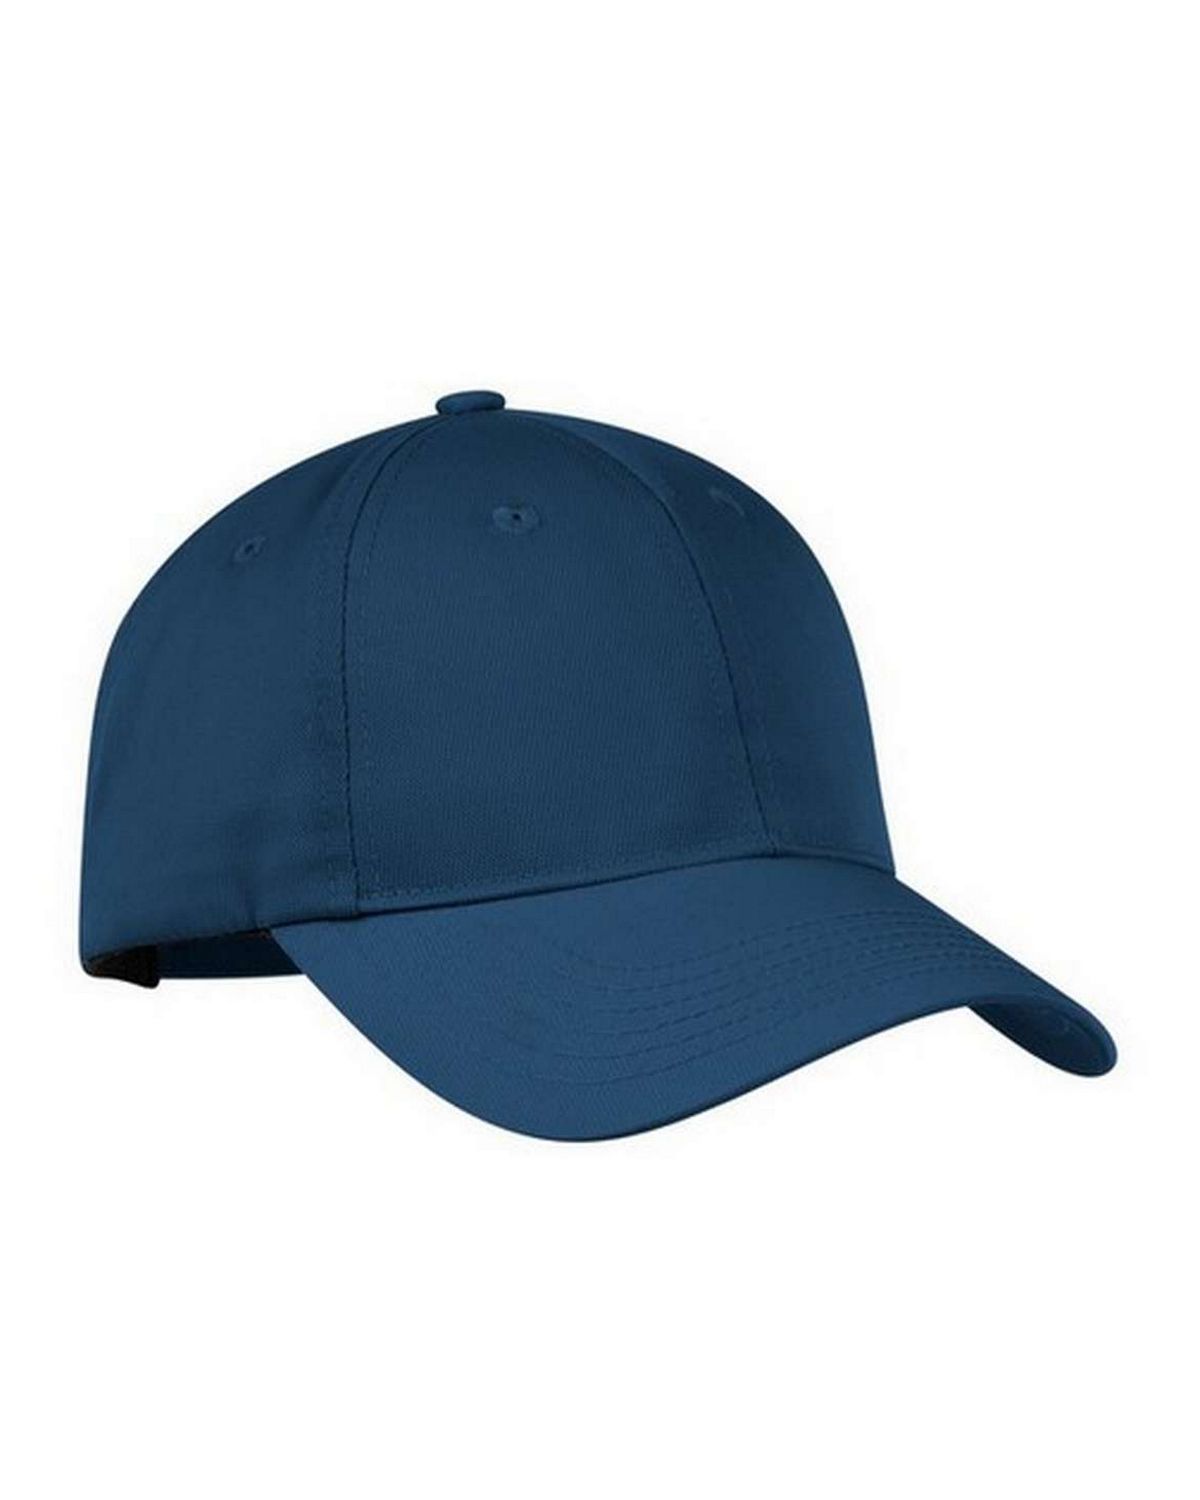 Two cap